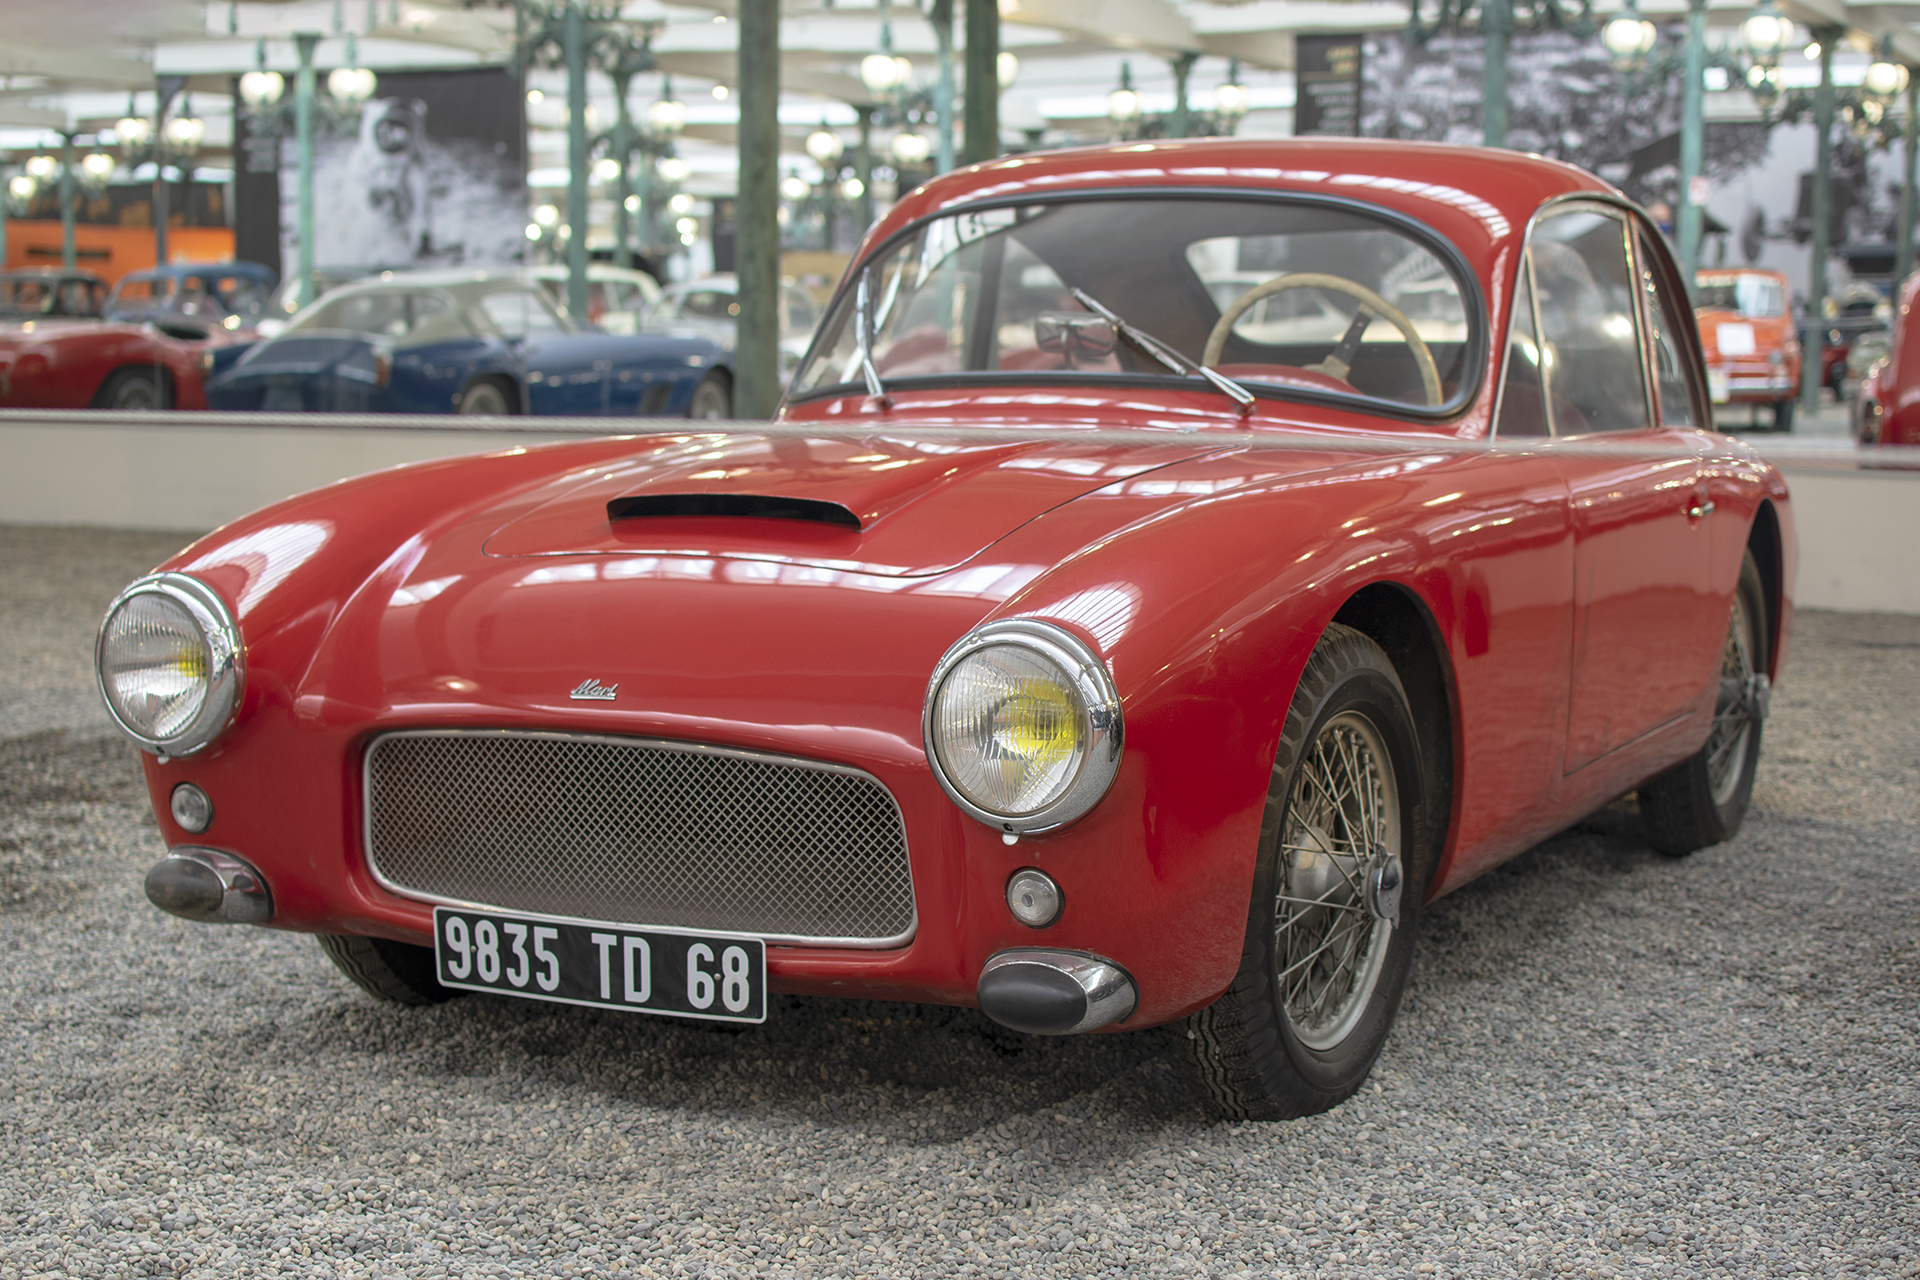 Alart Coupe prototype 1959- Cité de l'automobile, Collection Schlumpf, Mulhouse, 2020